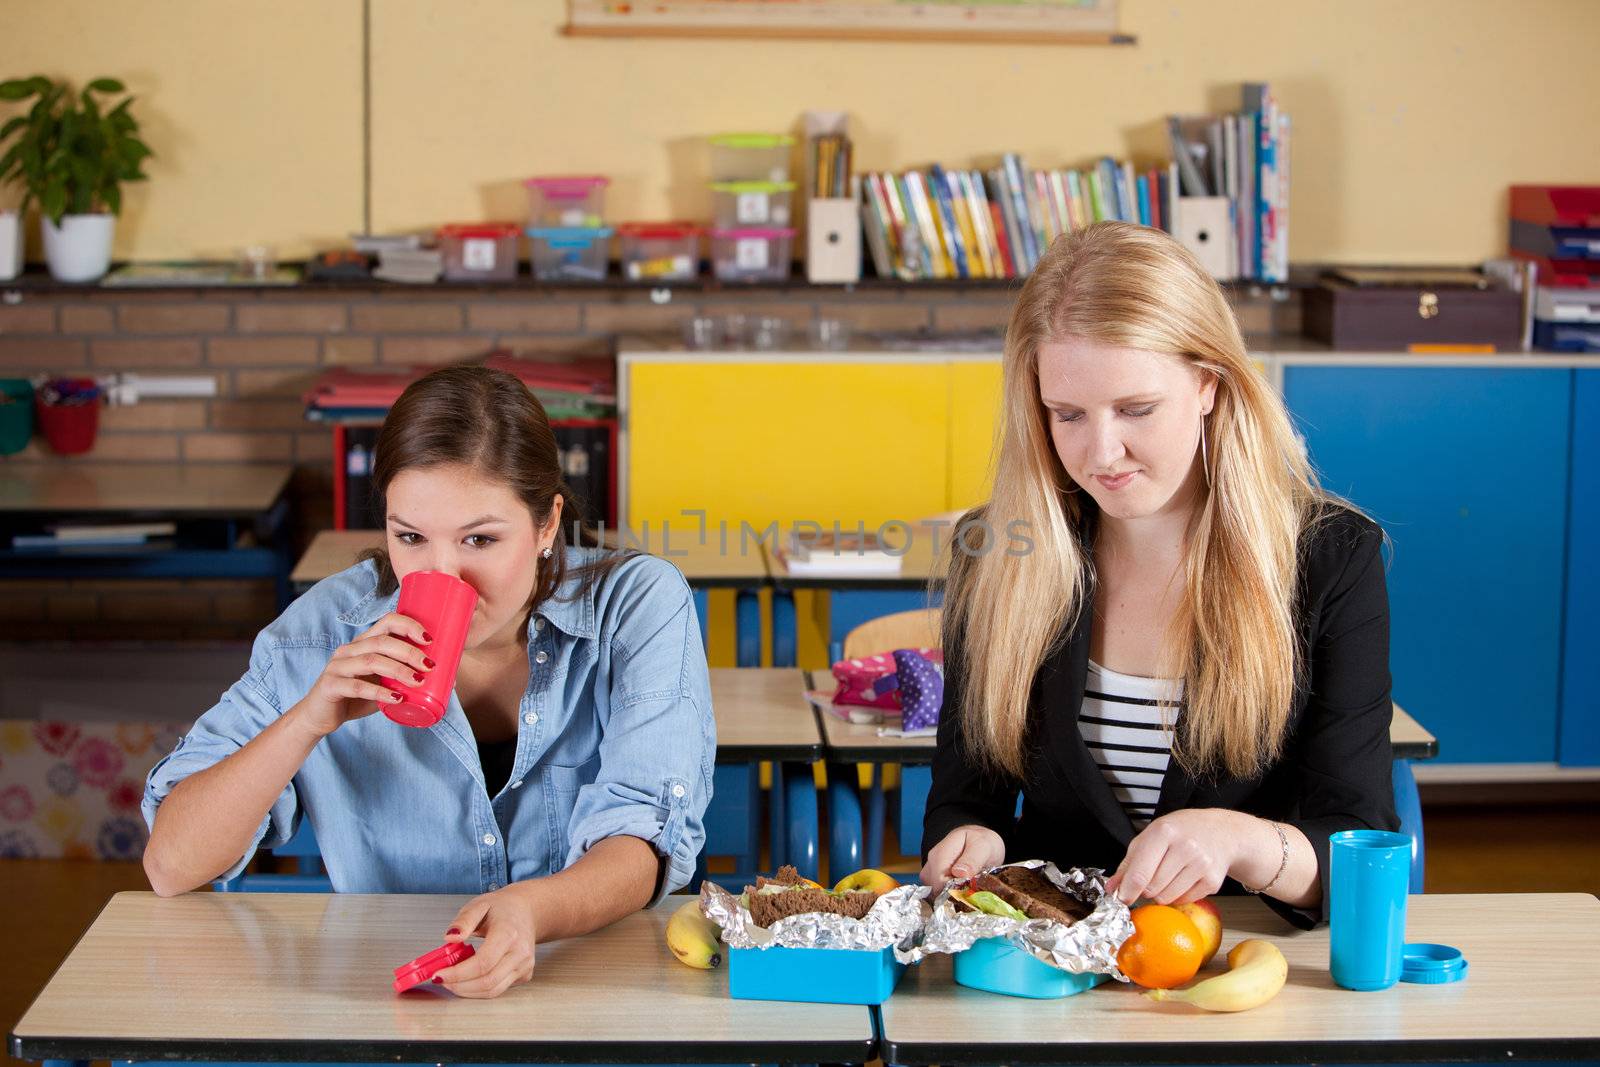 Healthy school lunch by Fotosmurf